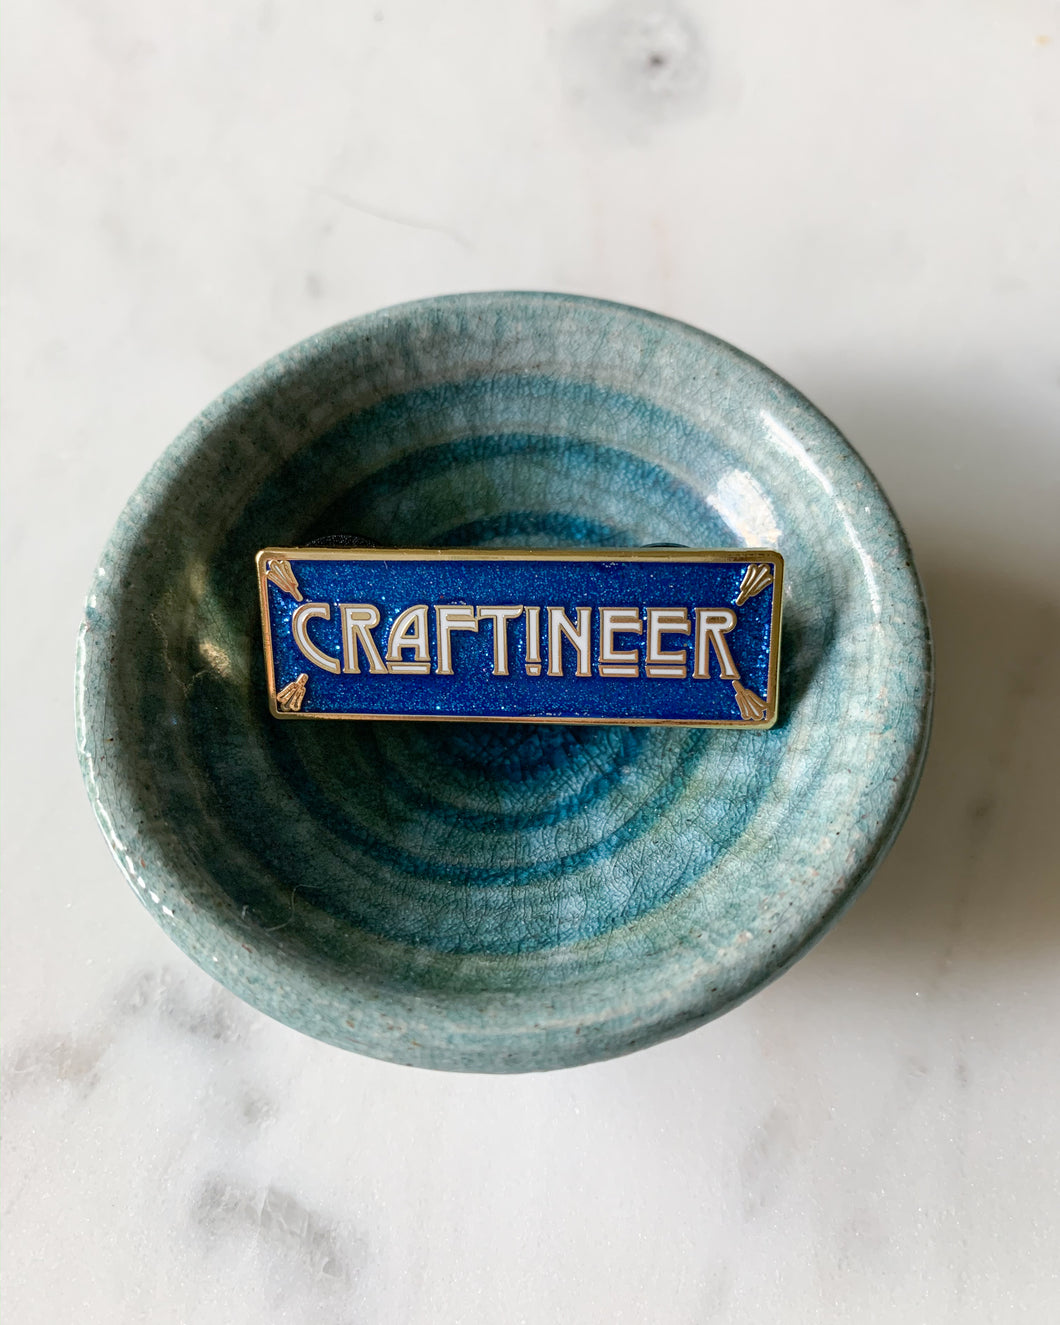 Craftineer Enamel Pin